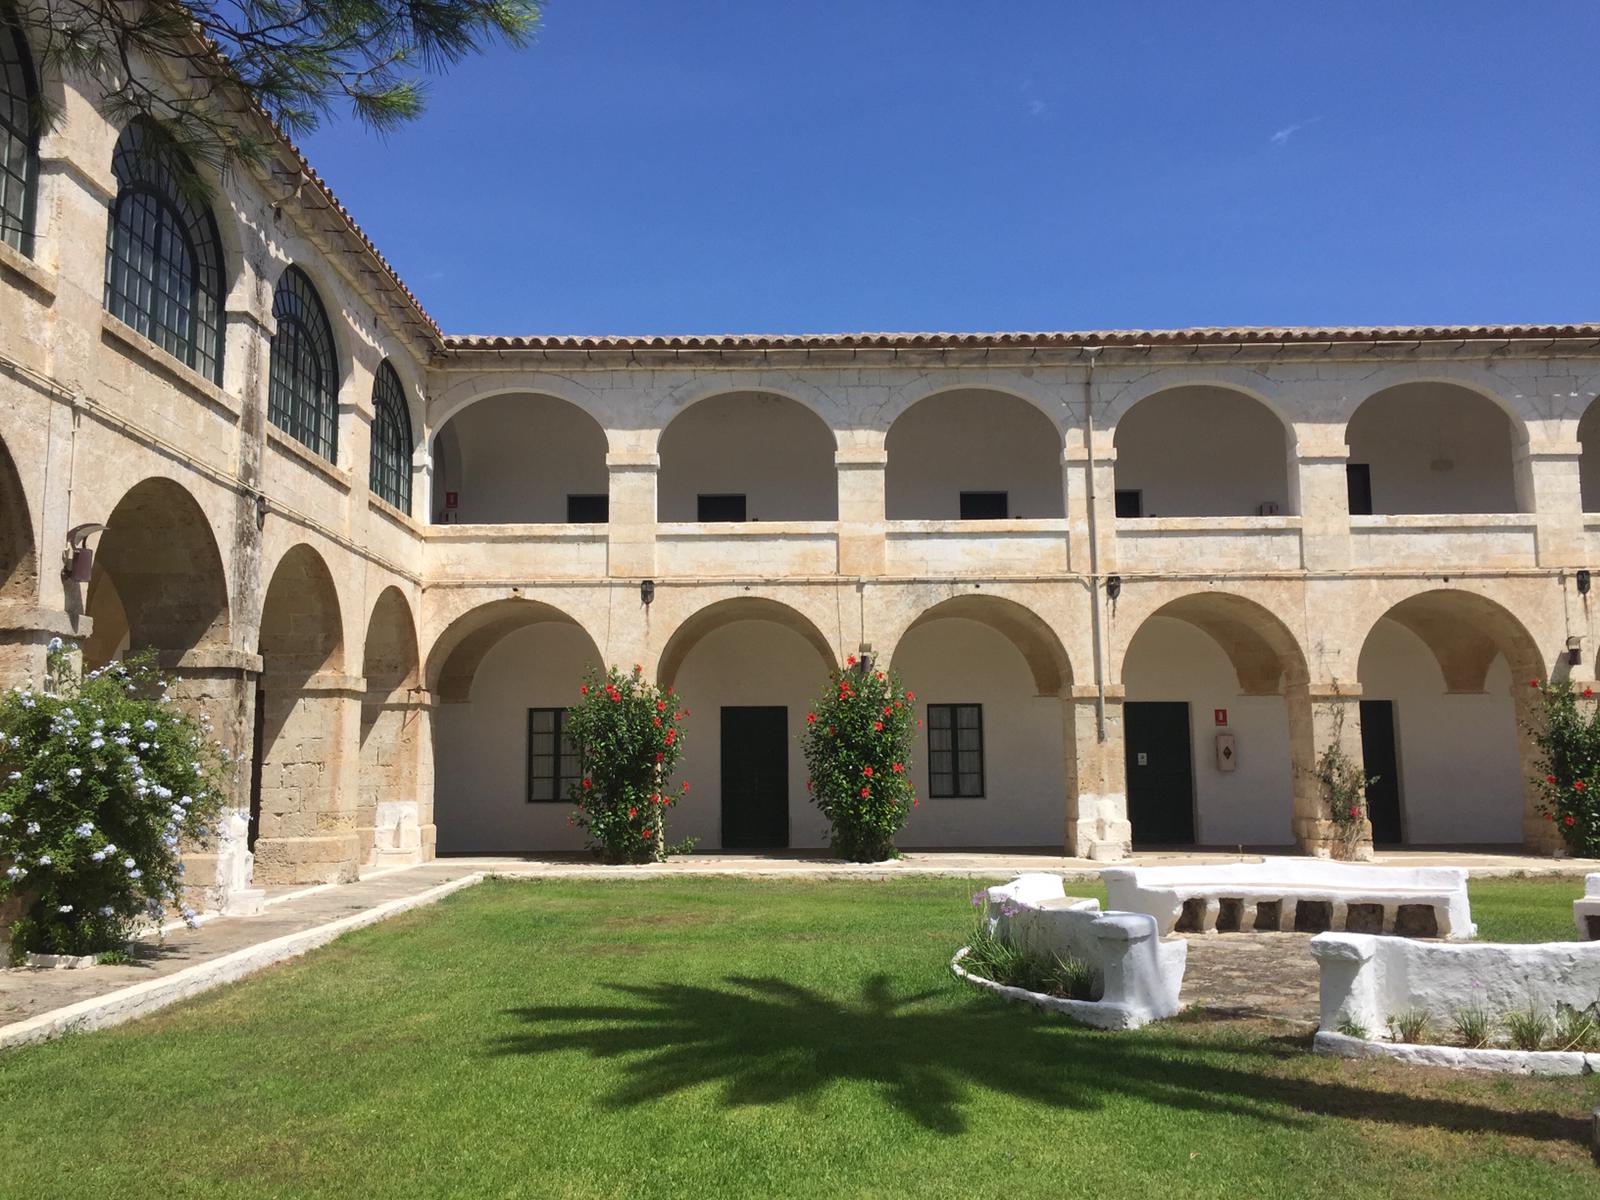 El Consell de Menorca regula les condicions d'ús del Llatzeret perquè sigui "espai generador de coneixement"